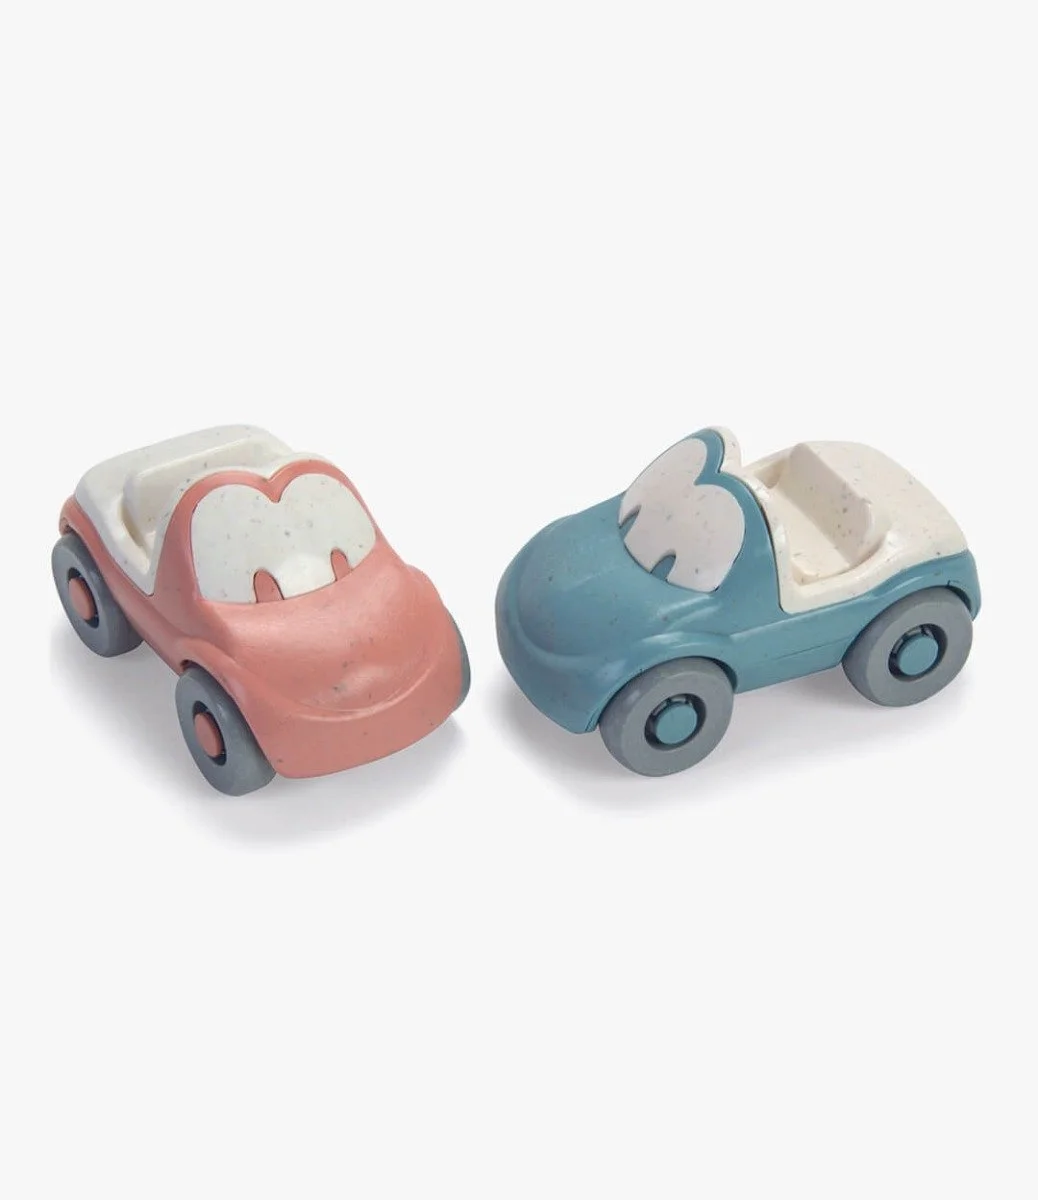 سيارات المرح للأطفال من البلاستيك الحيوي